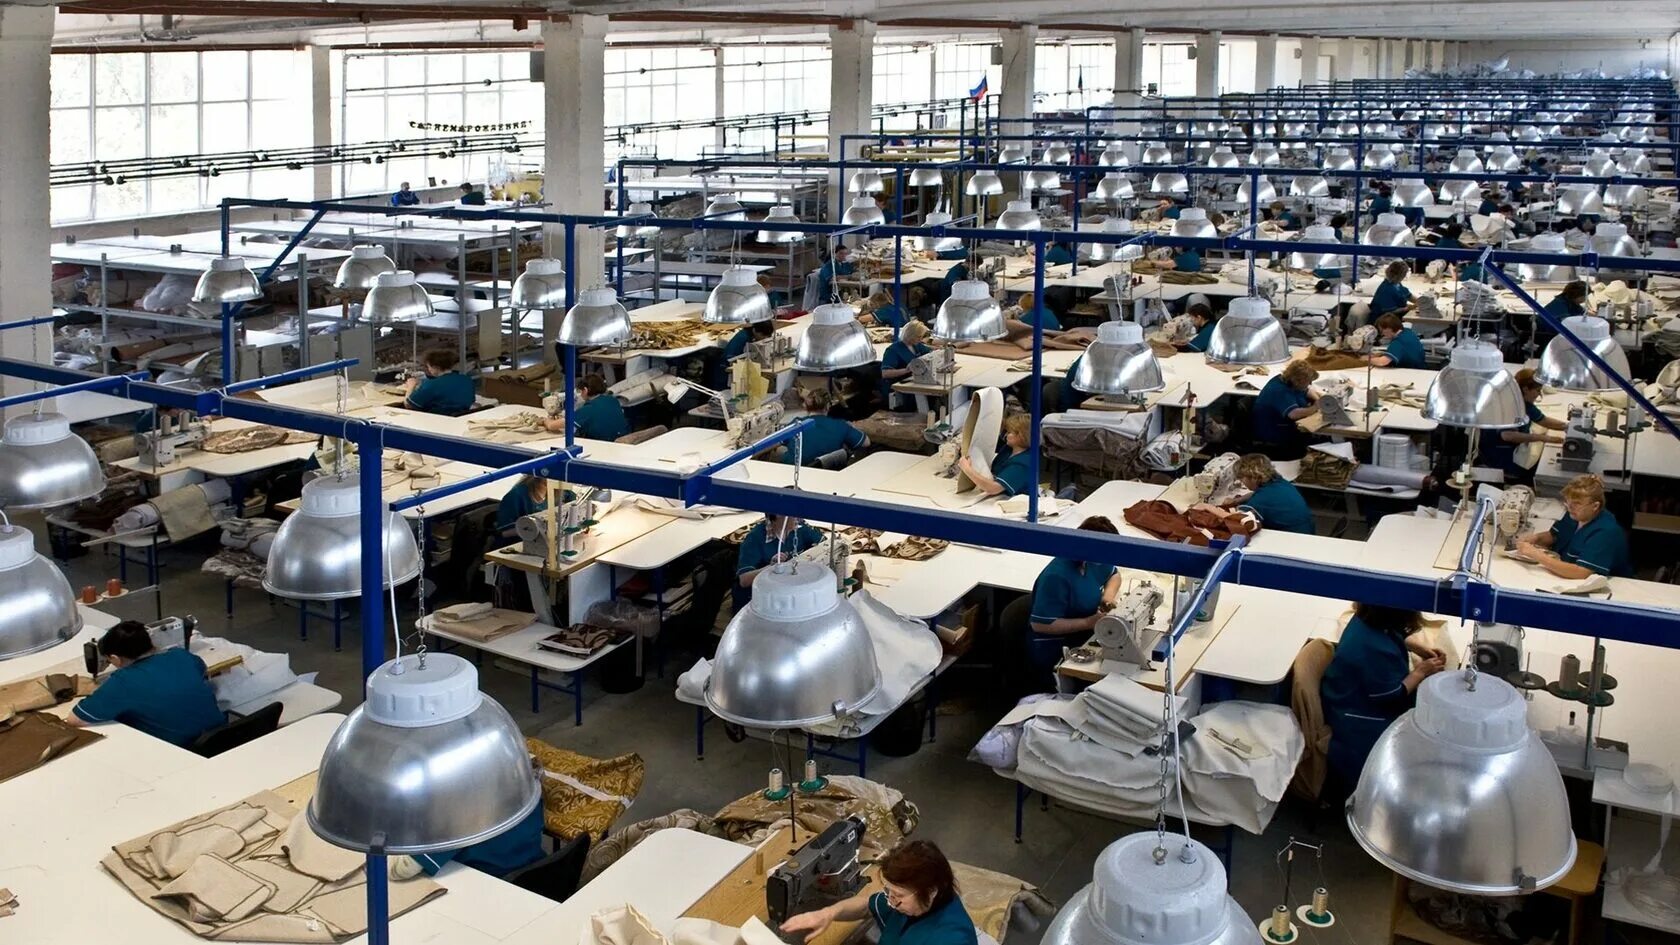 Фабрика - Ткацкая фабрика - швейная фабрика. Швейный цех. Текстильное производство. Текстильный завод. Lots of factories